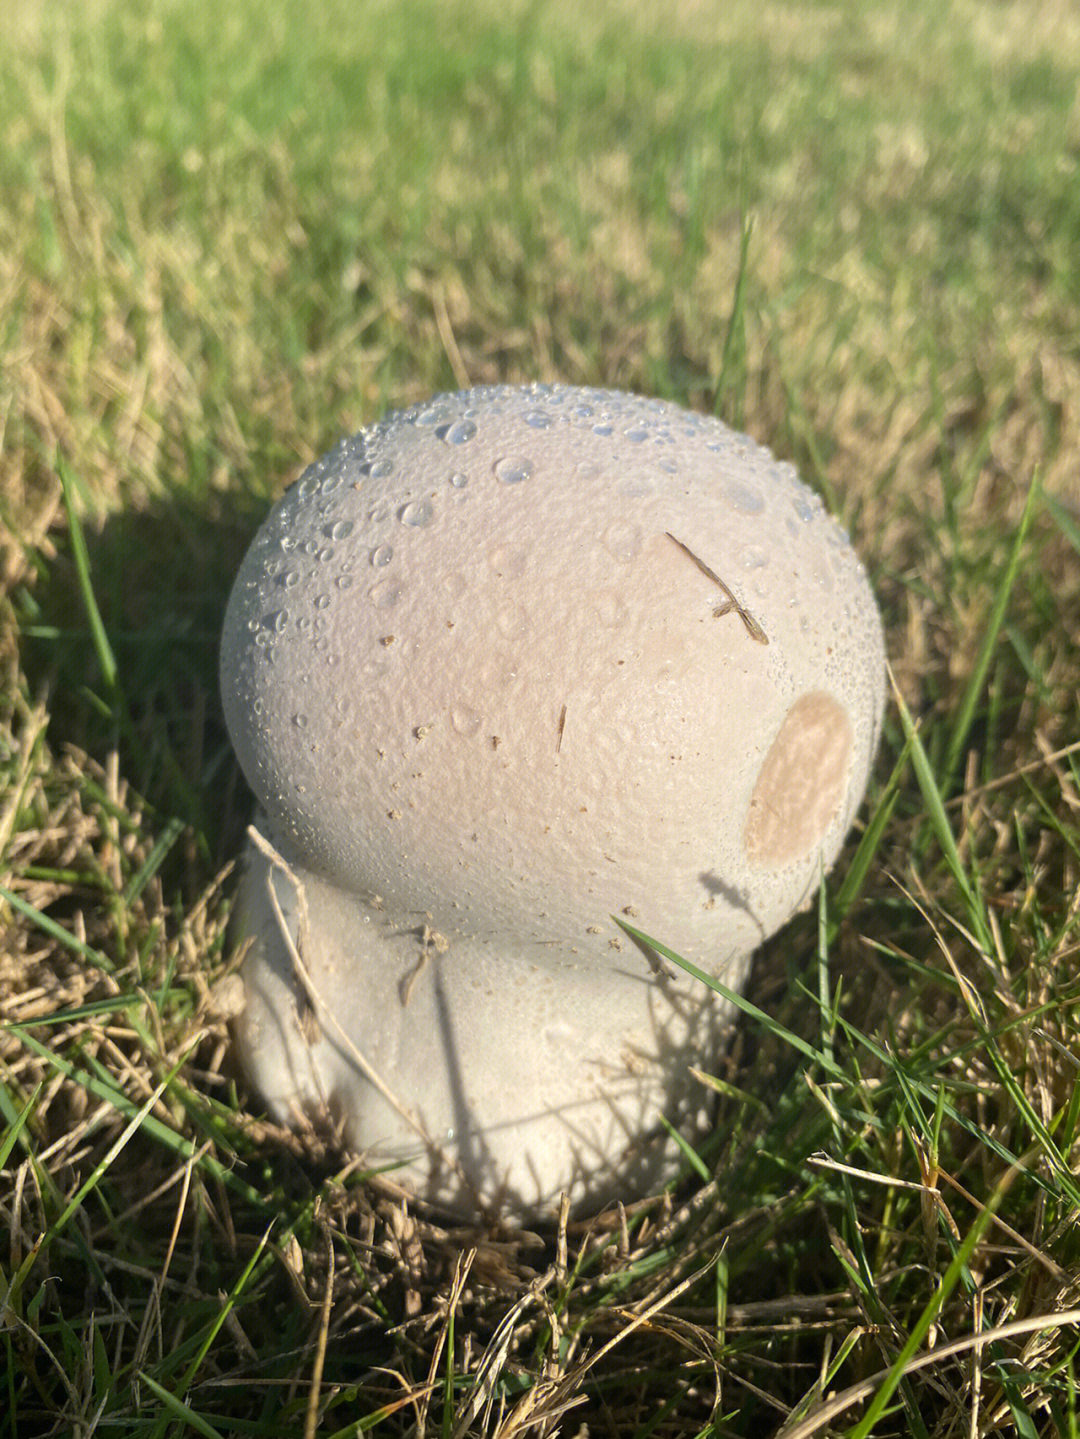 白白胖胖的蘑菇格外显眼,好可爱啊,请问能吃吗,什么名字呢